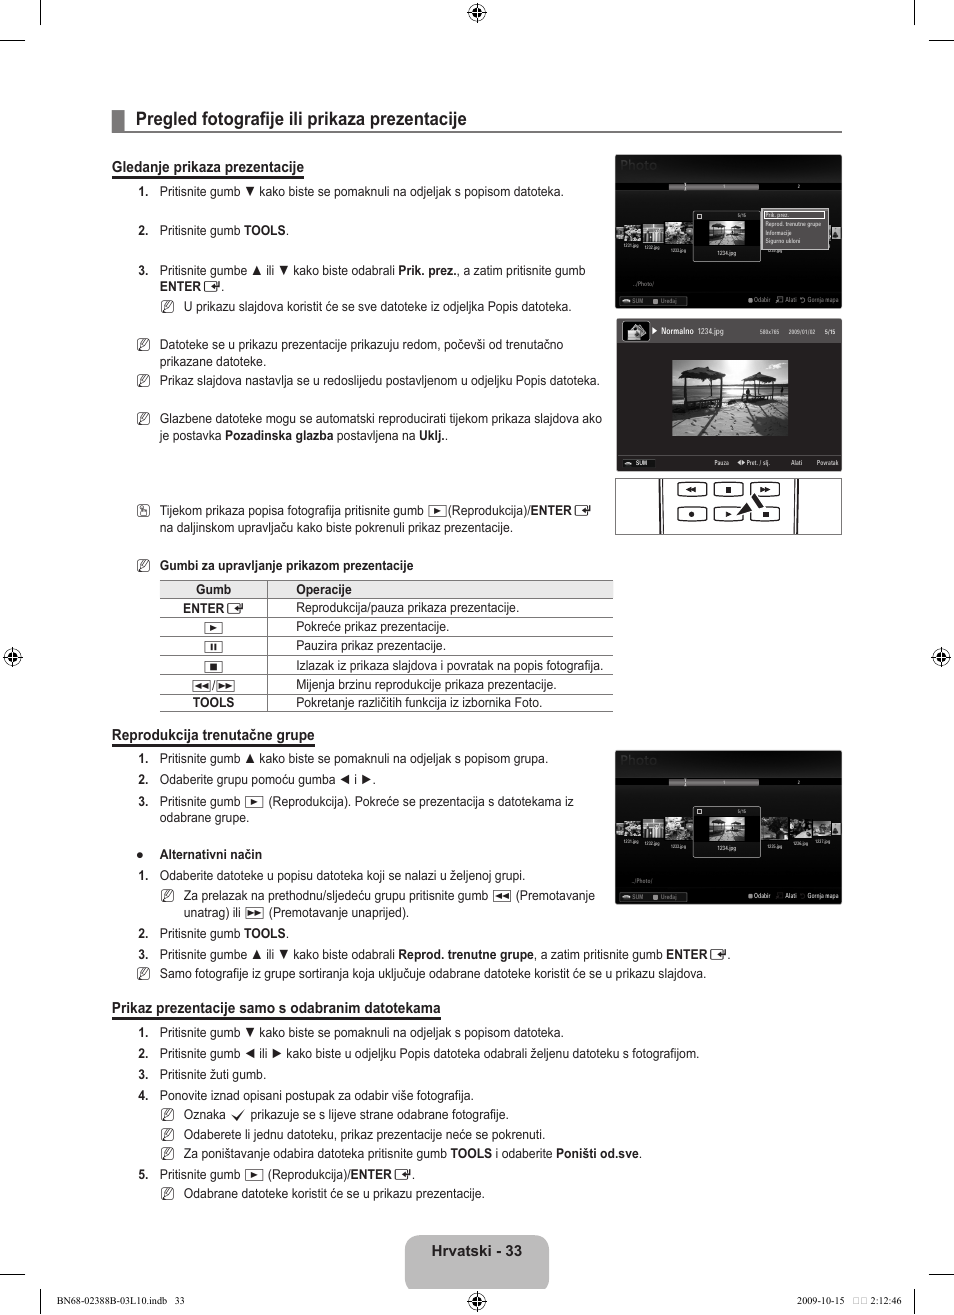 Pregled fotografije ili prikaza prezentacije, Hrvatski - 33, Gledanje  prikaza prezentacije | Samsung UE32B6000VW User Manual | Page 309 / 542 |  Original mode